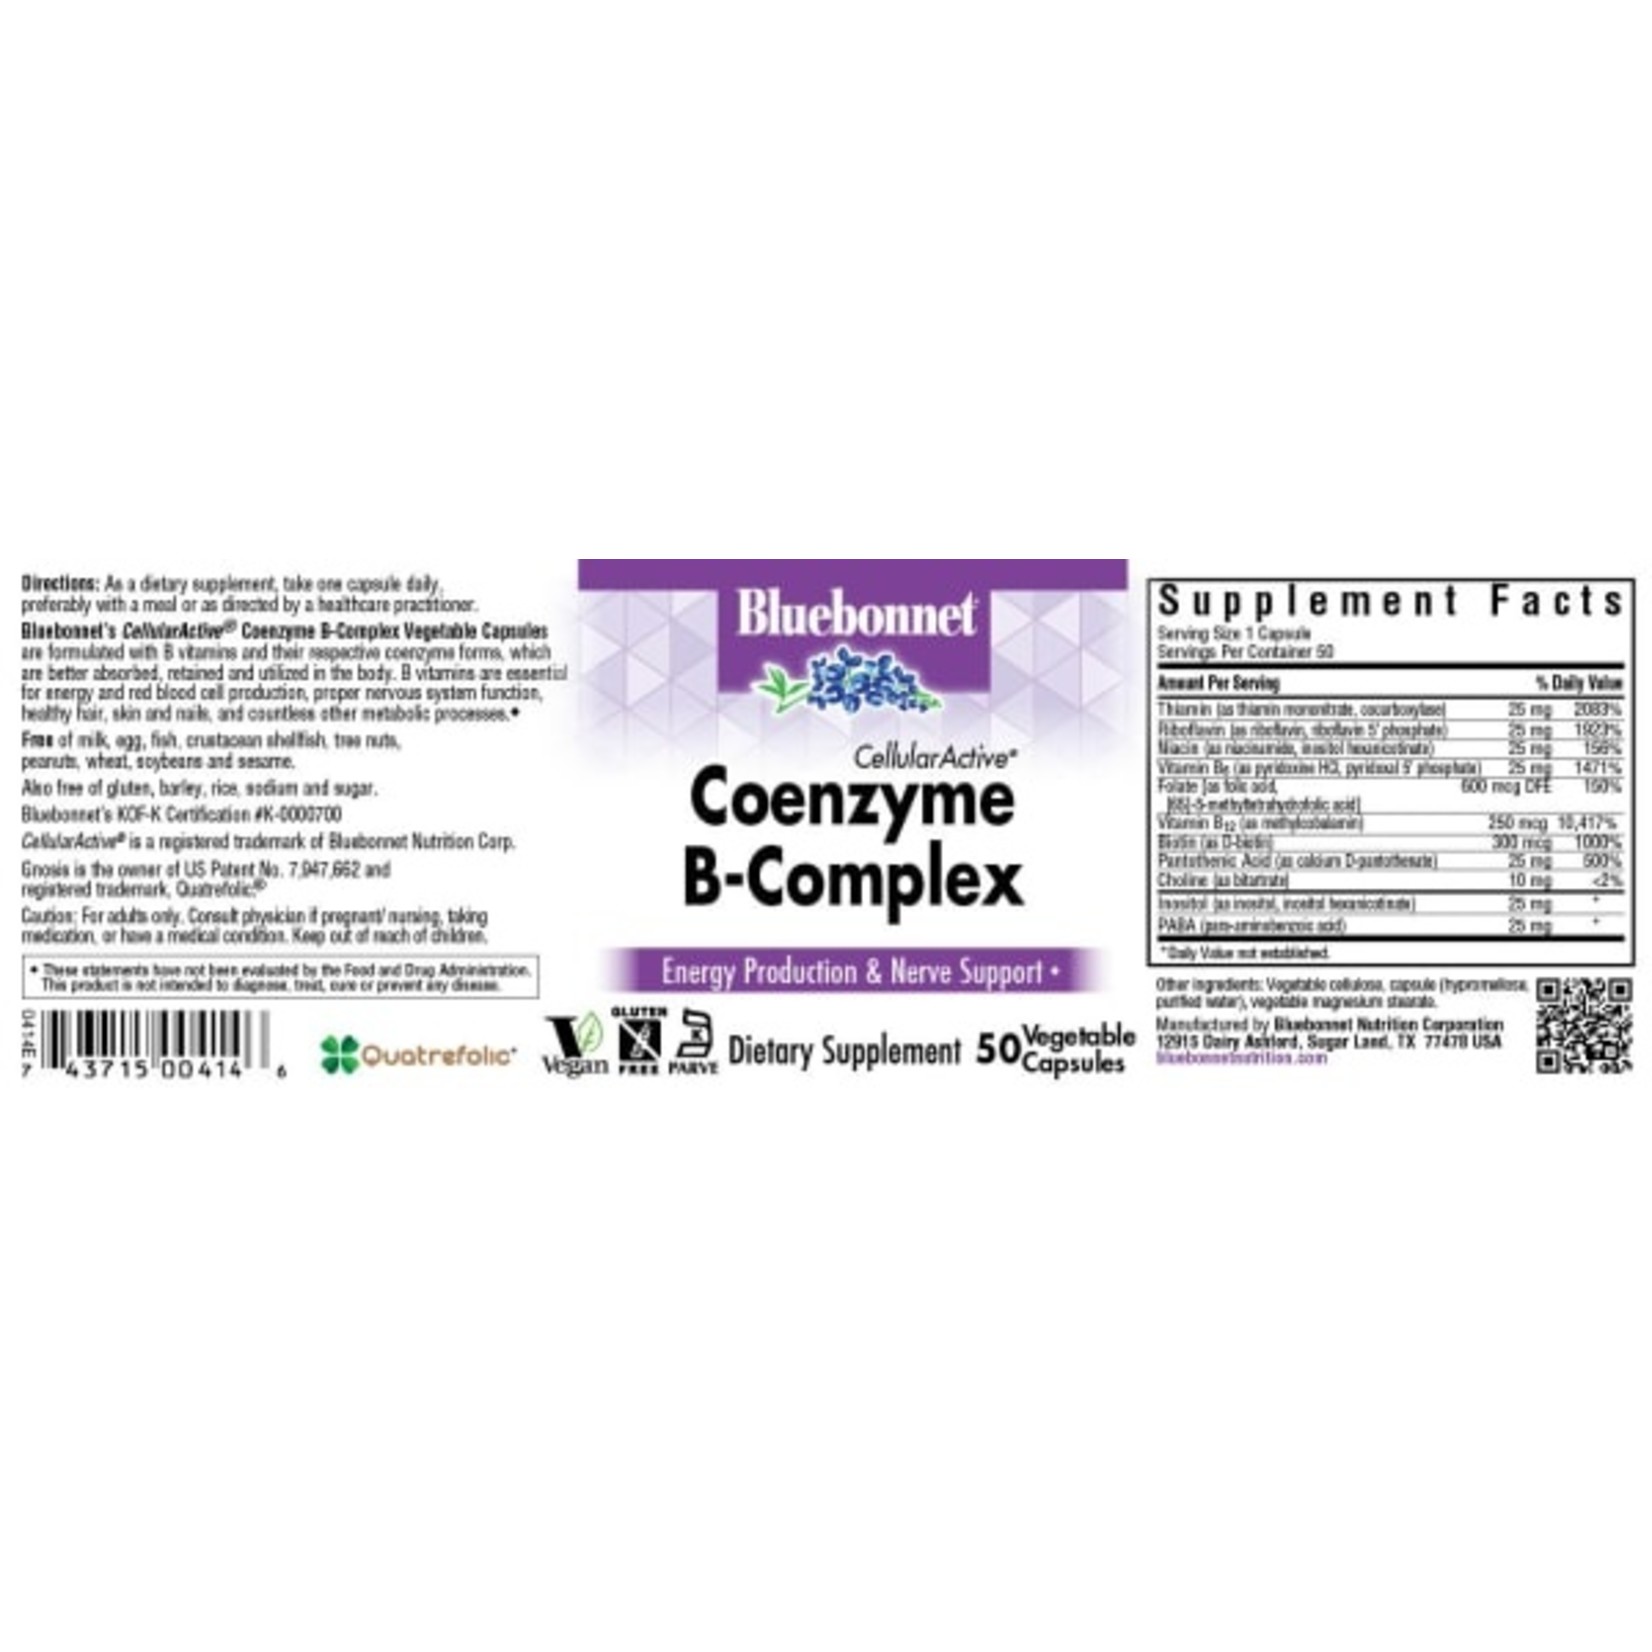 Bluebonnet Bluebonnet - Coenzyme B-Complex - 50 Veg Capsules